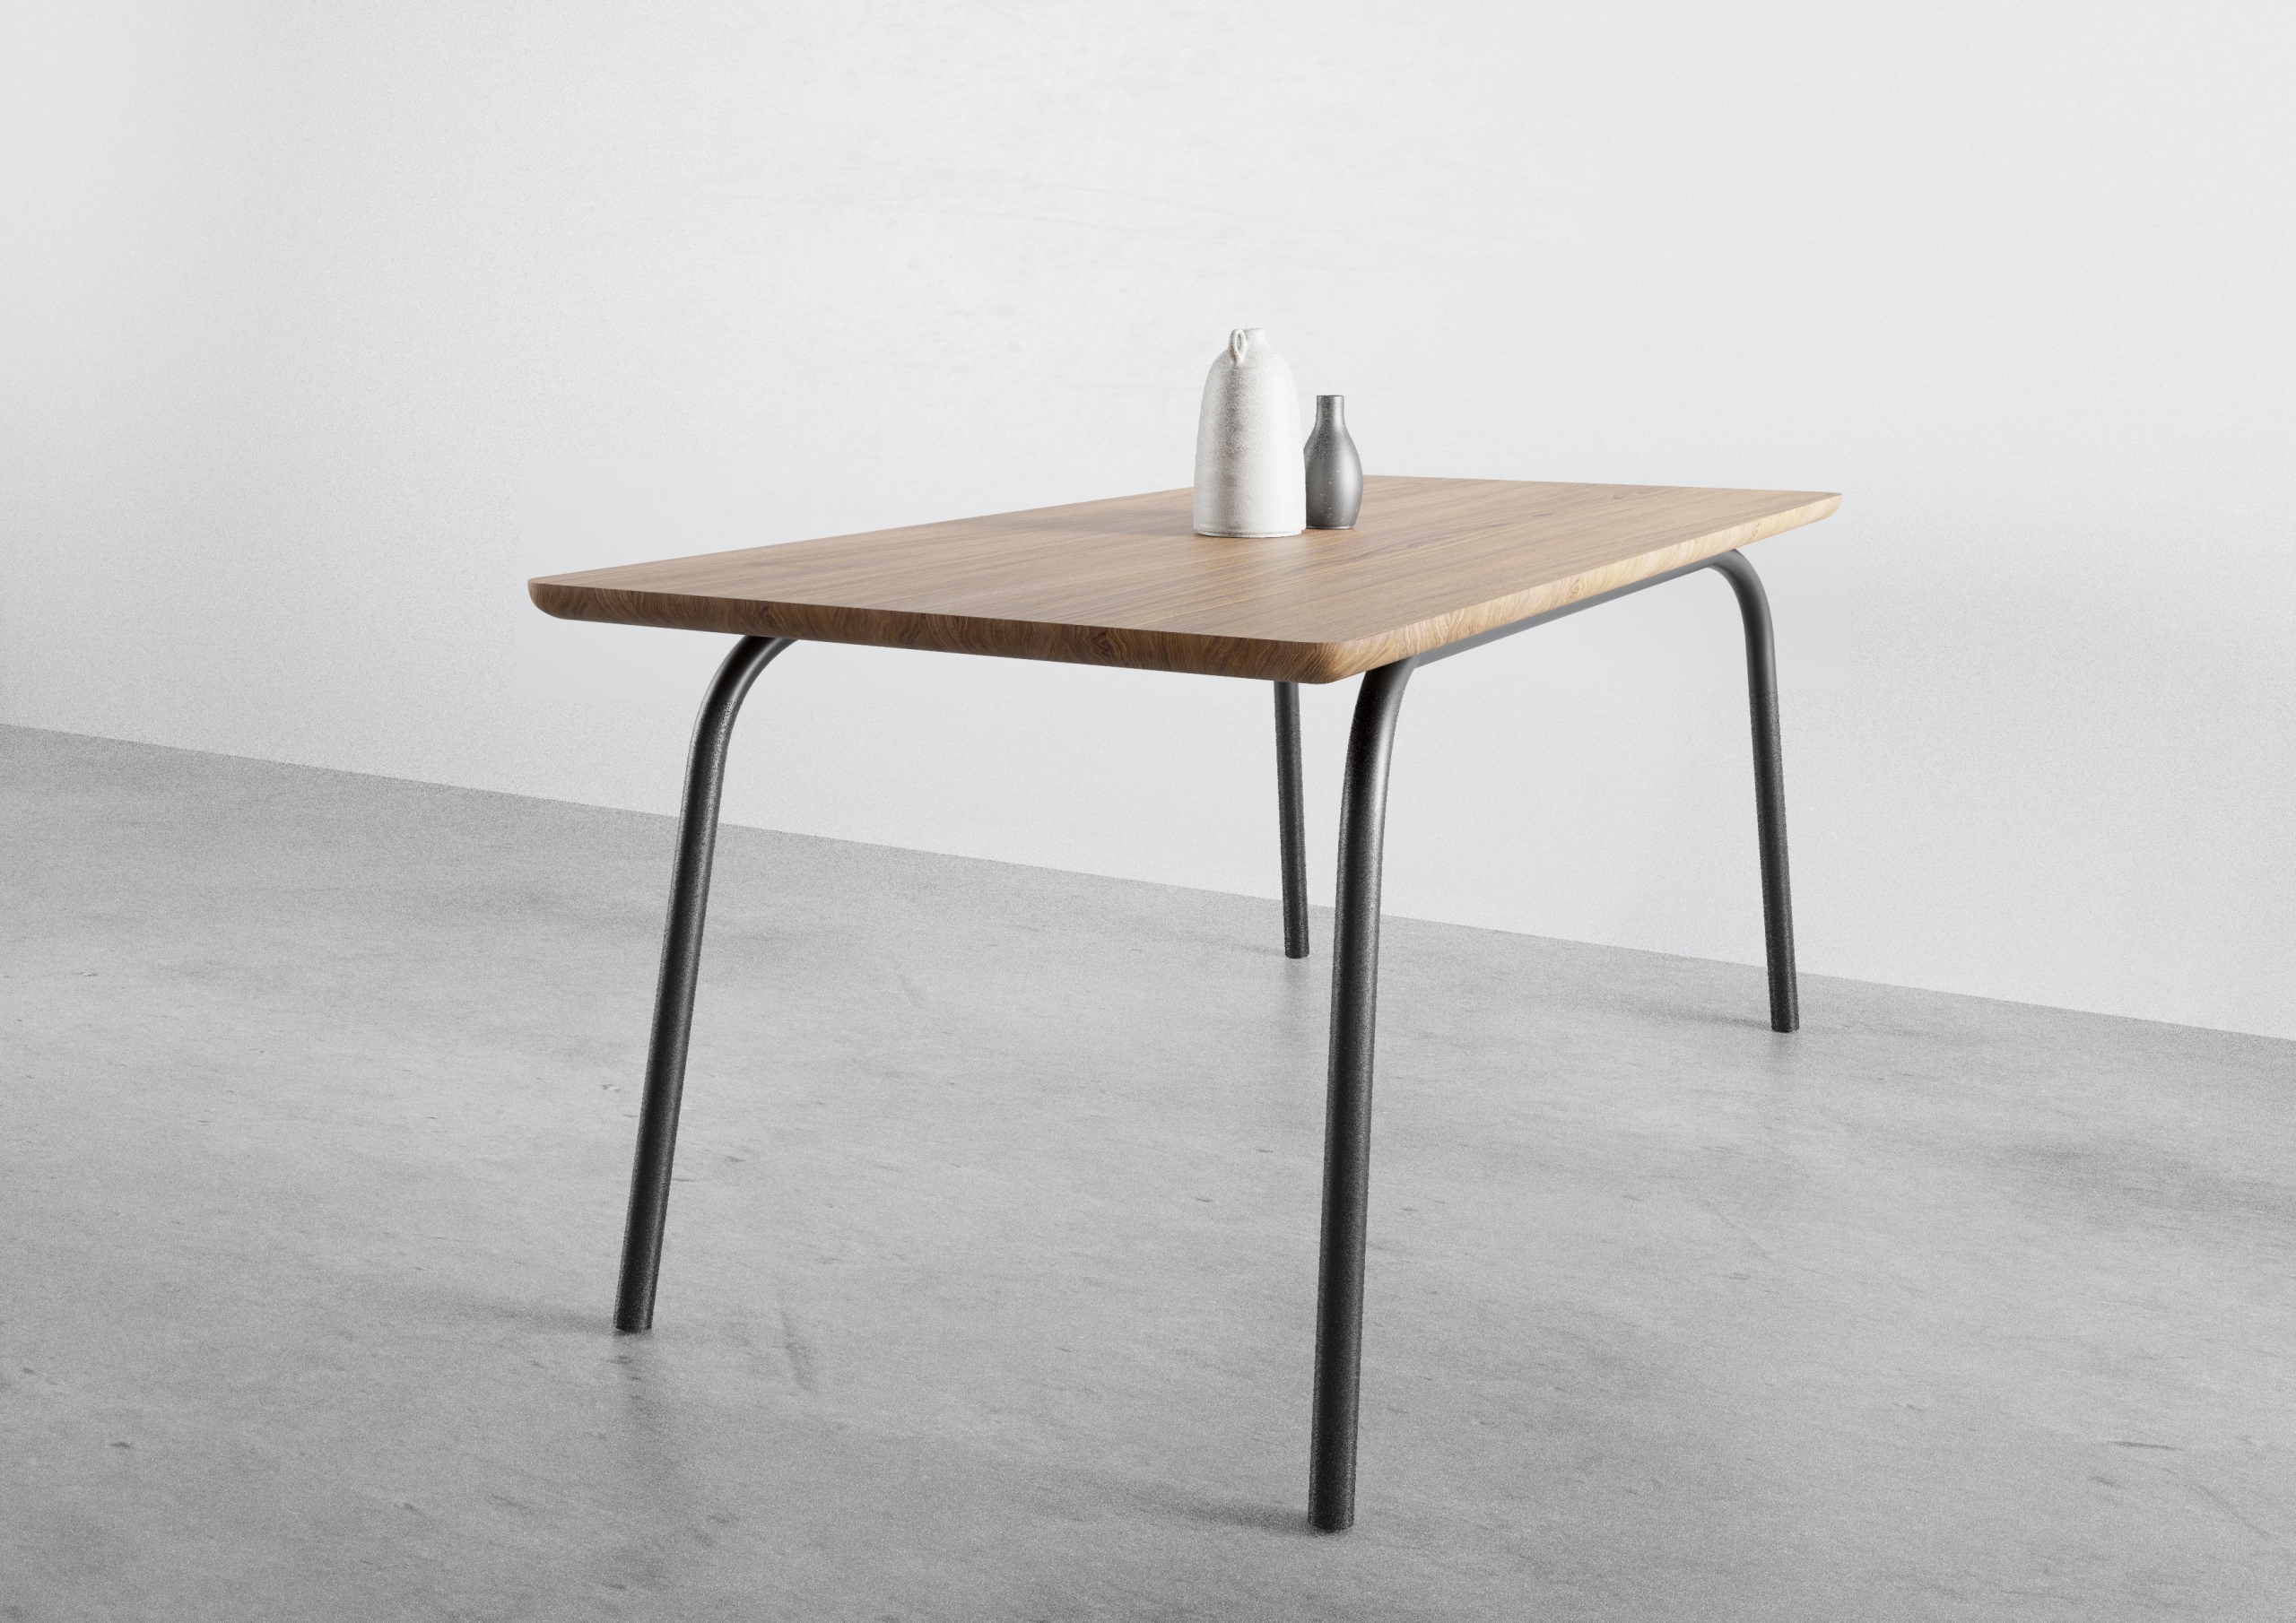 ST13 OVO, nowoczesny stół, zaokrąglona krawędź, stół dębowy, stół do jadalni, stół rozkładany, stół 160 cm 140 cm, praktyczny stół, stół prostokątny, dębowy stół, stół na 4 nogach, producent stołów